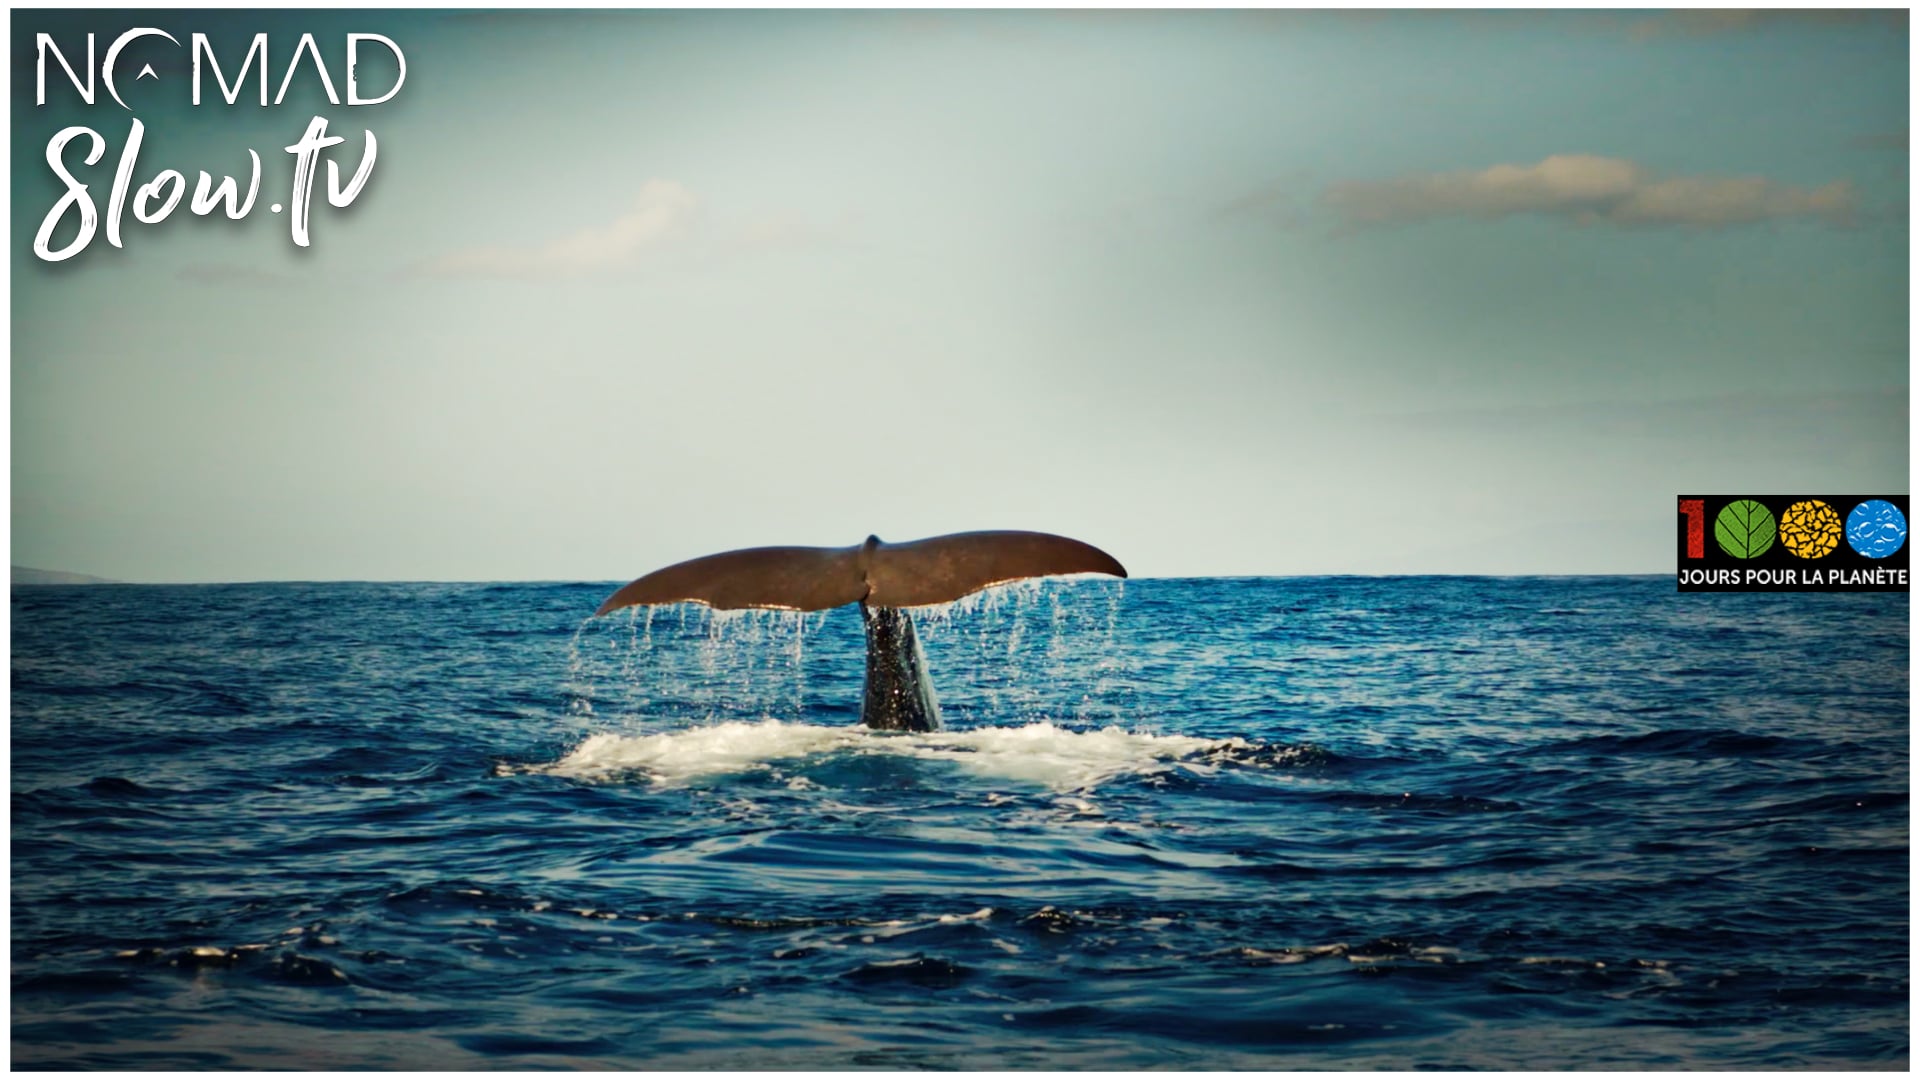 Baleines - 1000 jours pour la planète - slow tv